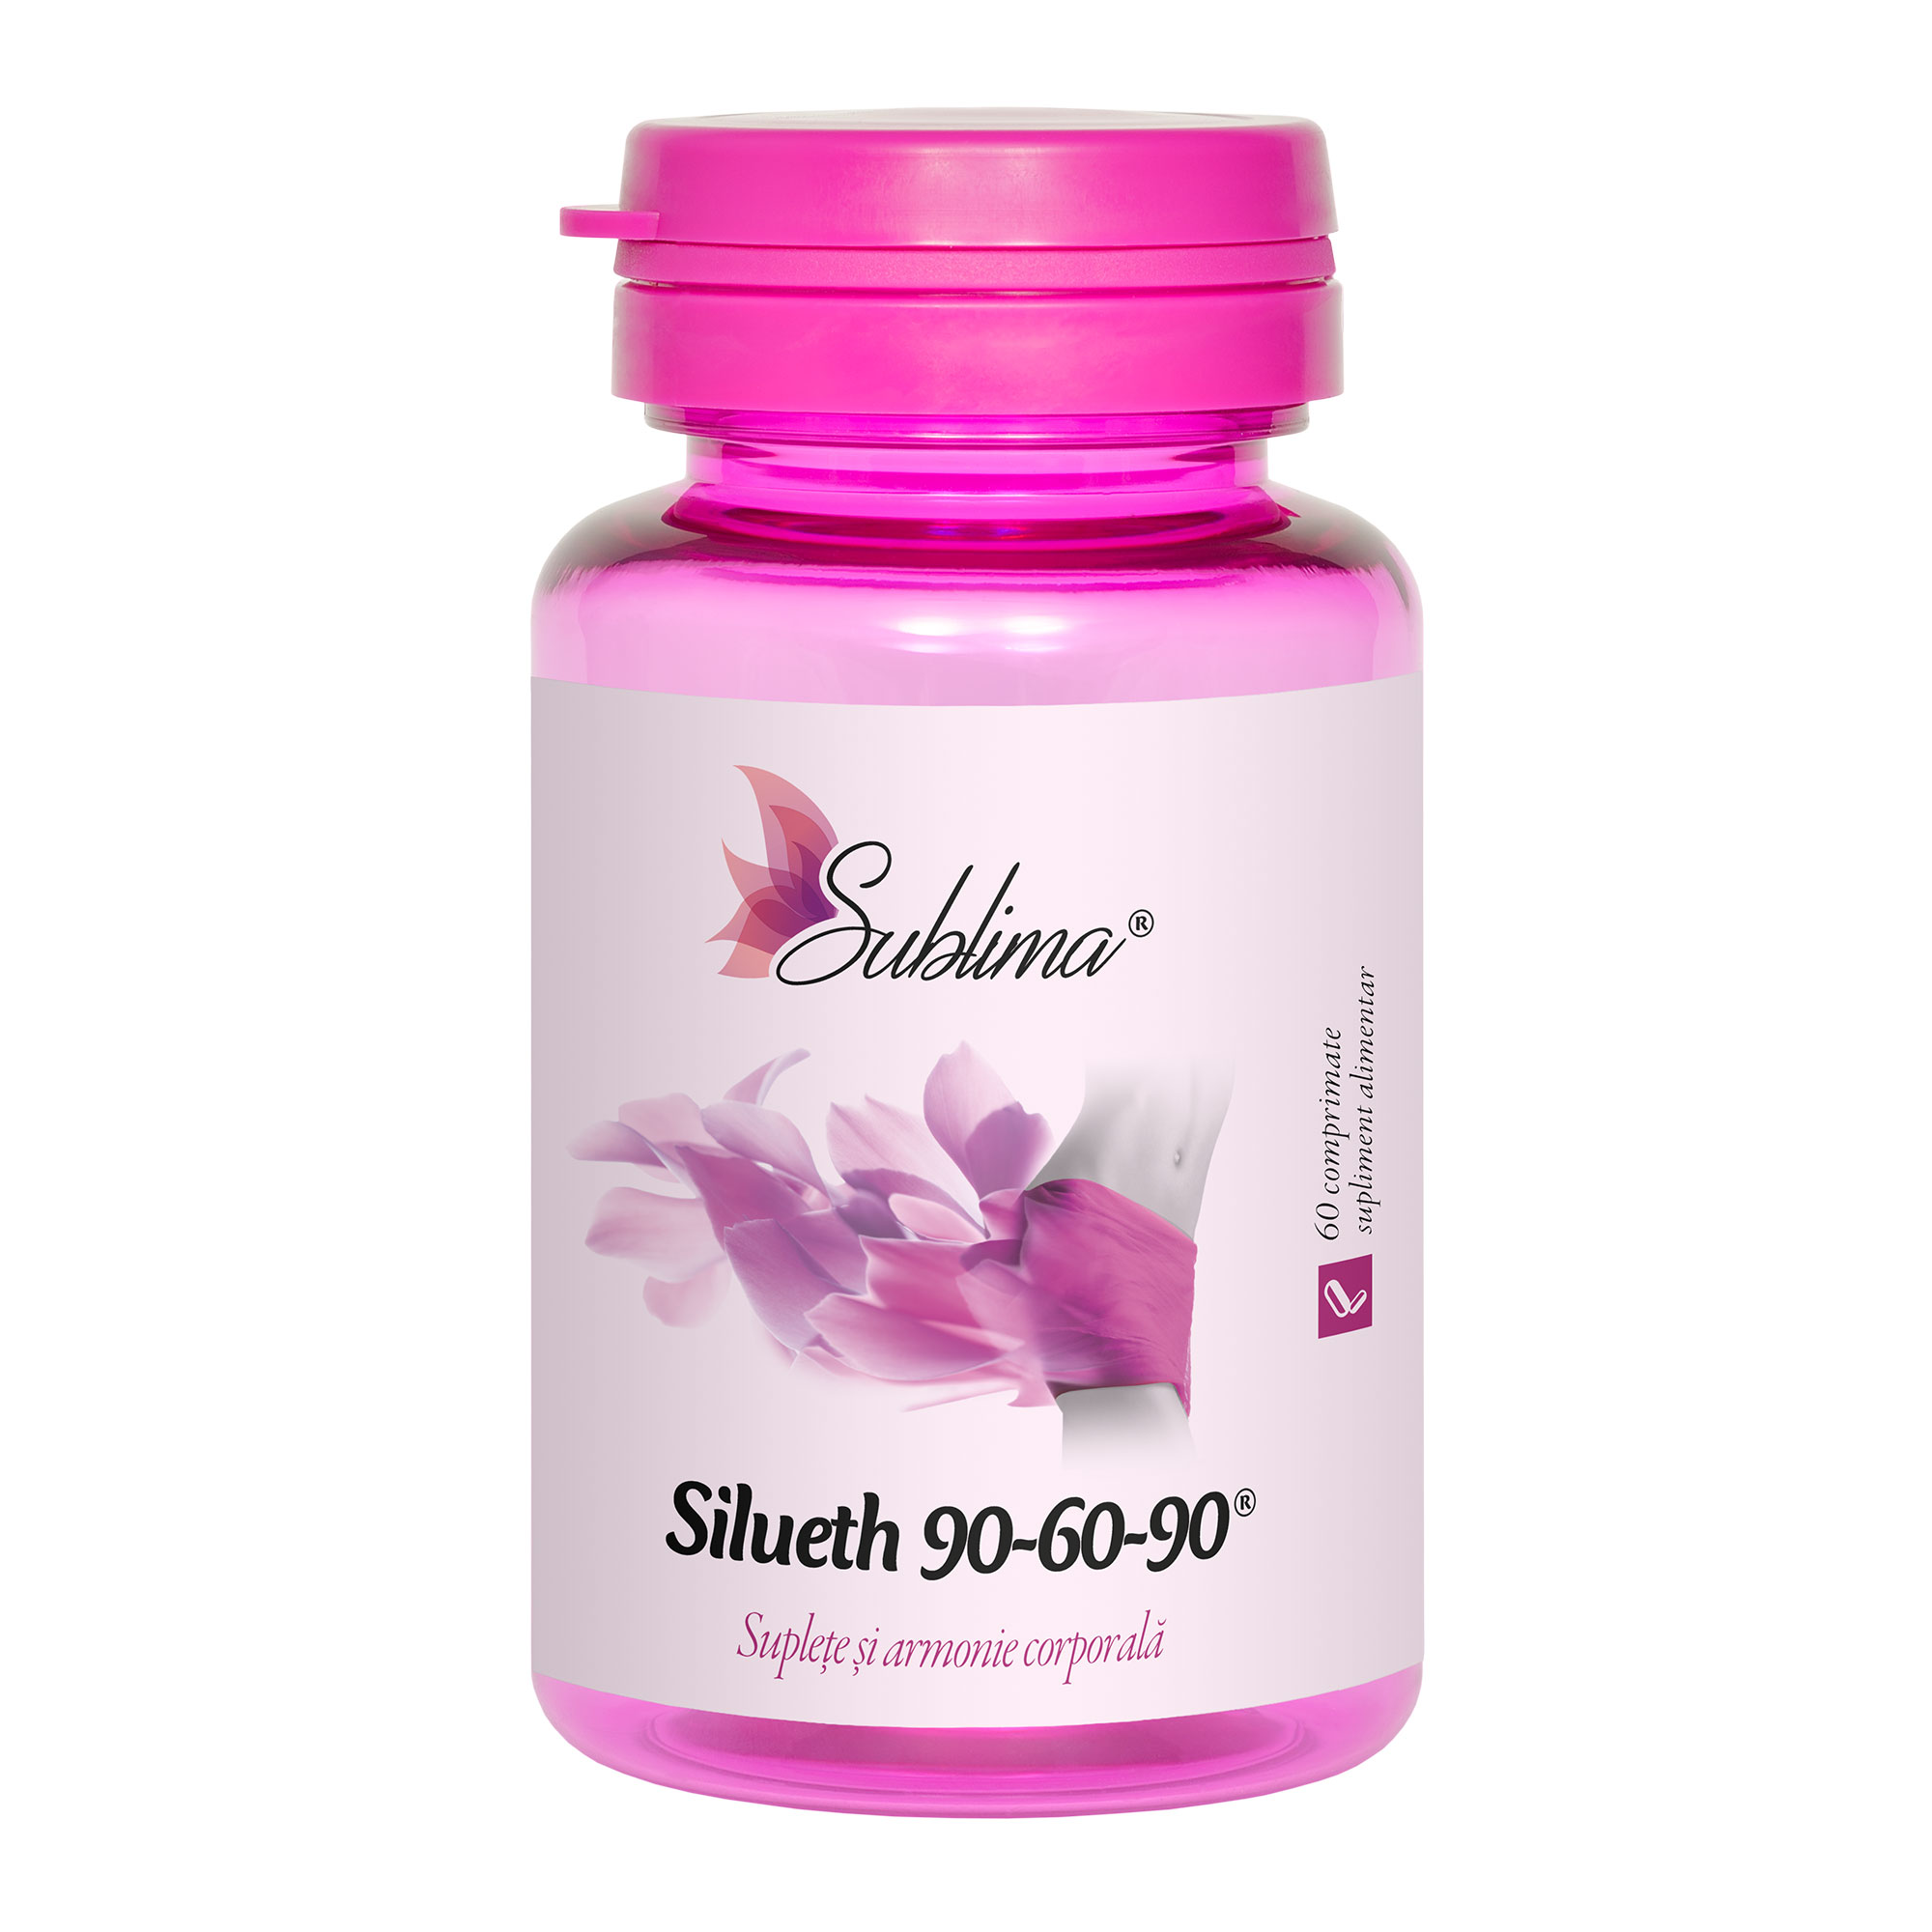 Sublima Silueth 90-60-90 comprimate daciaplant.ro